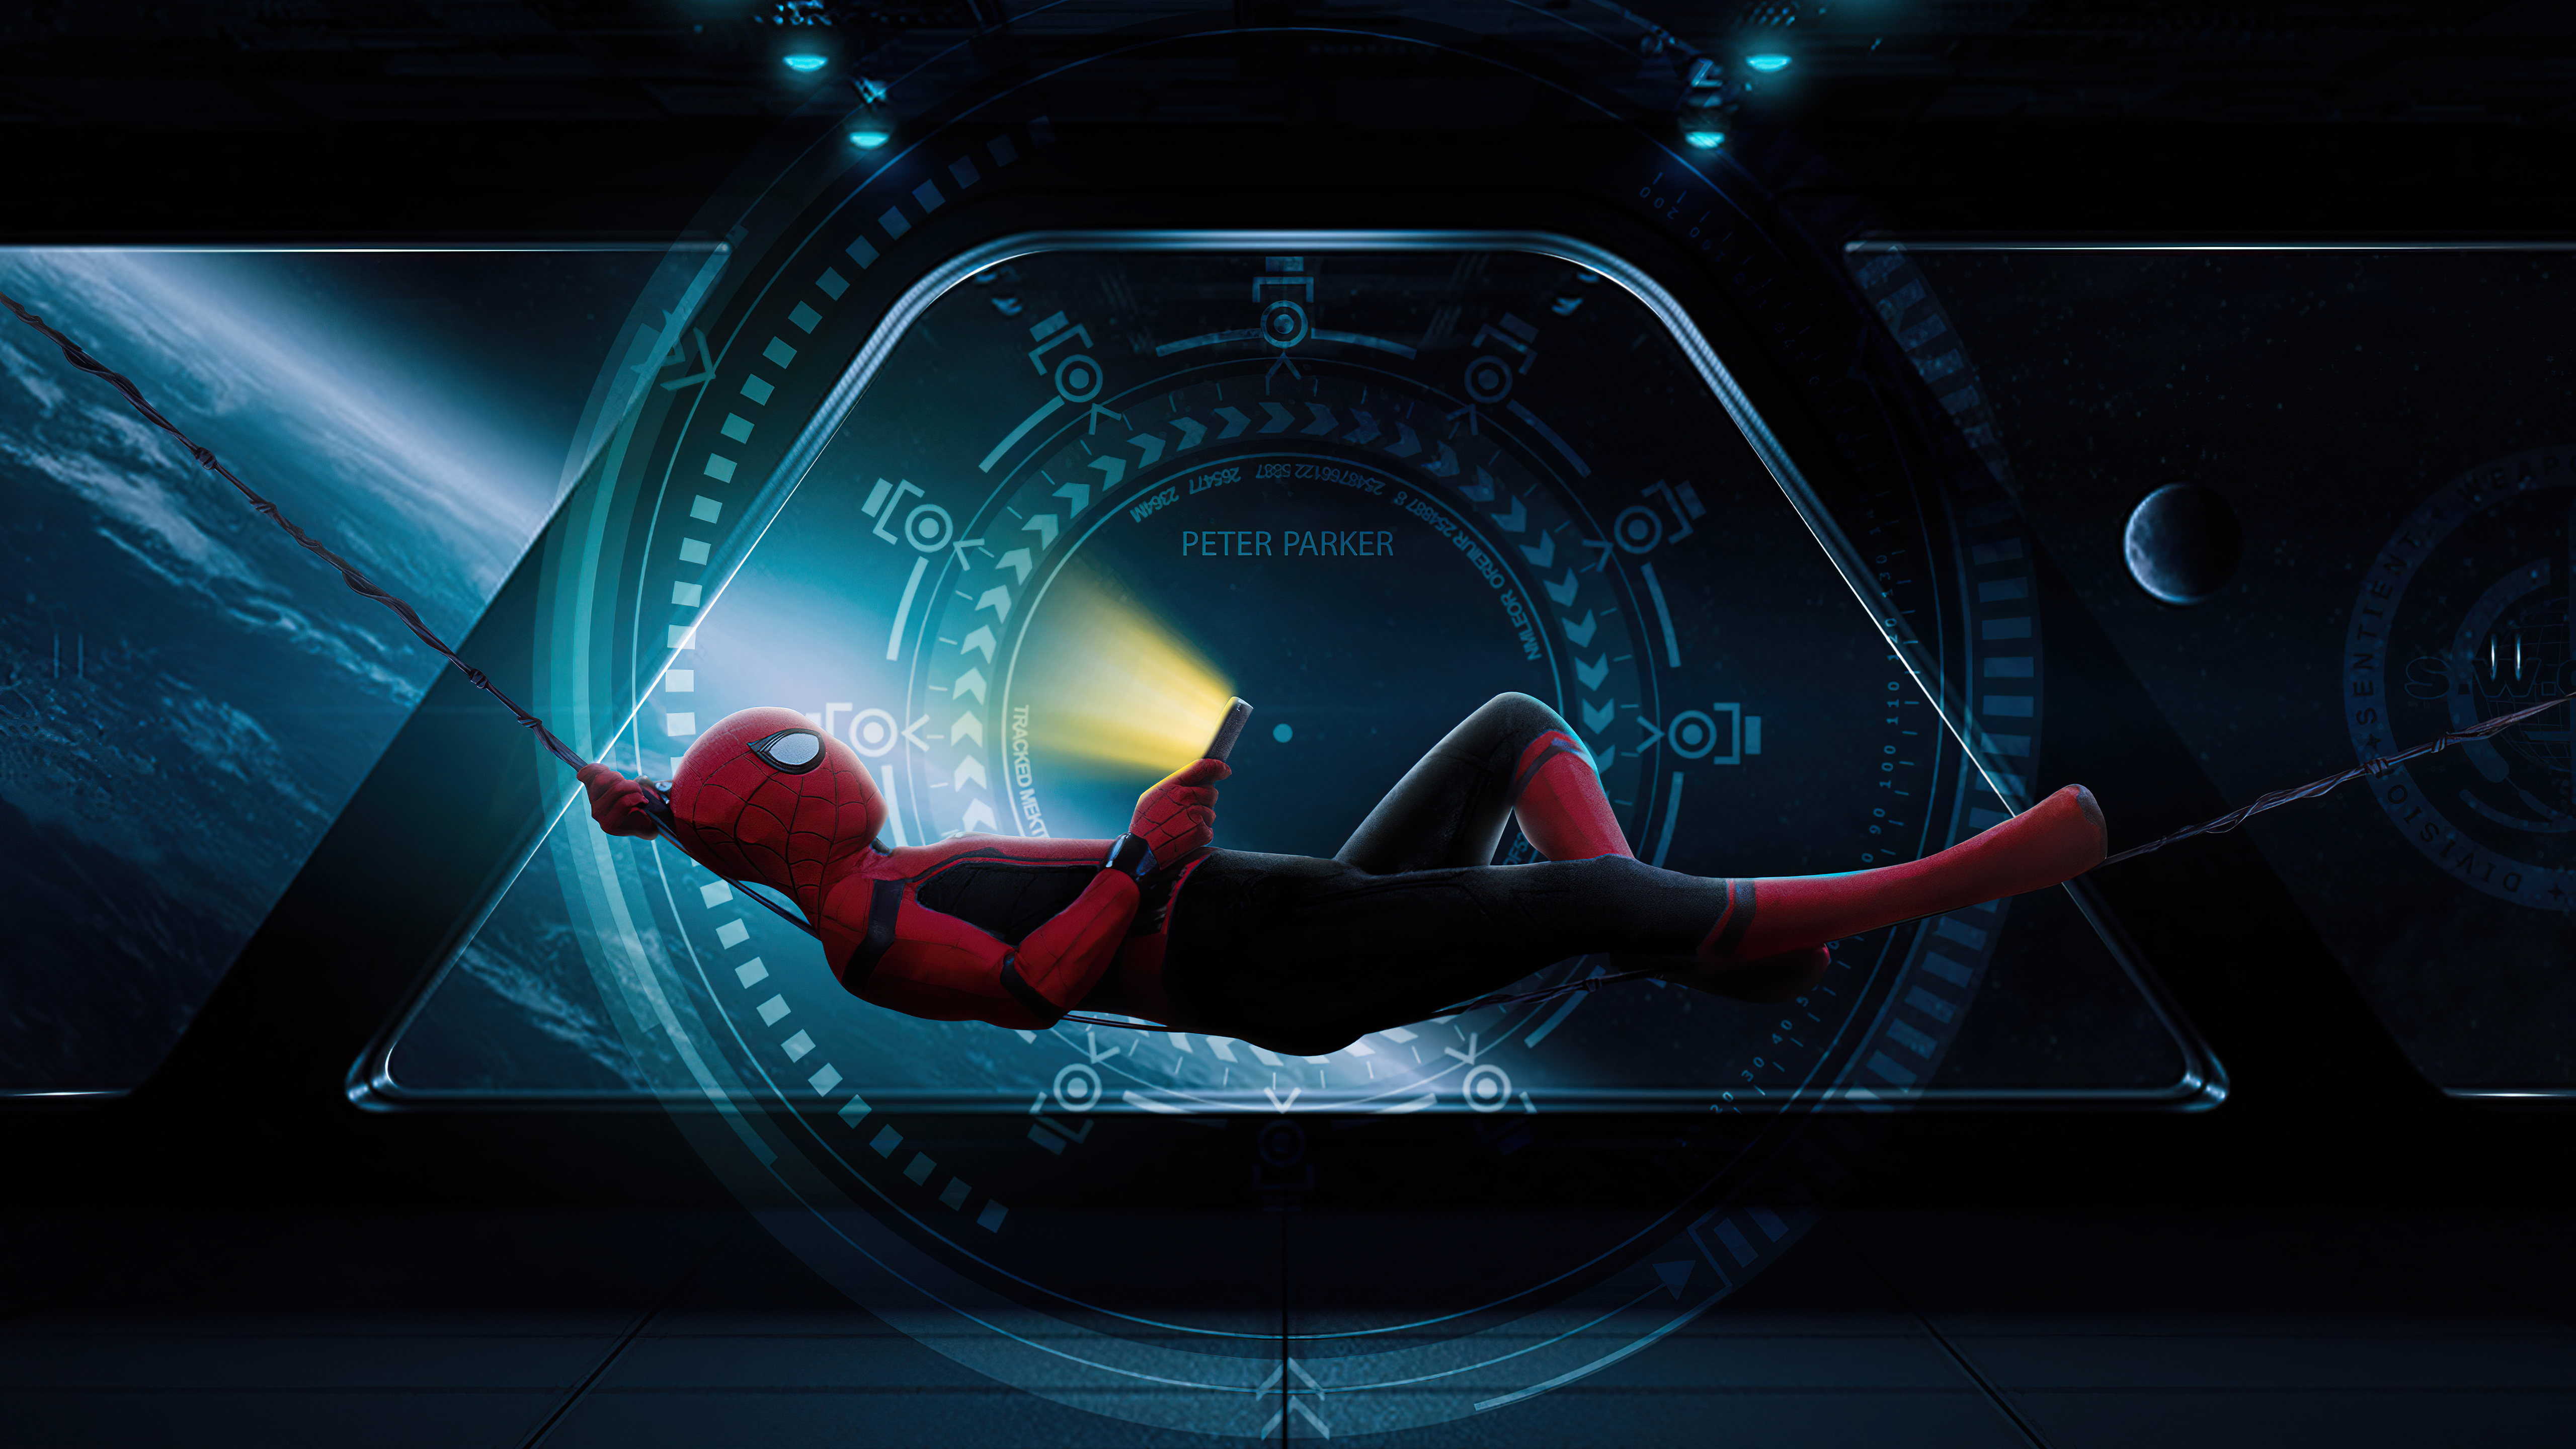 Spider-Man 4K Digital Art 2021 Wallpapers